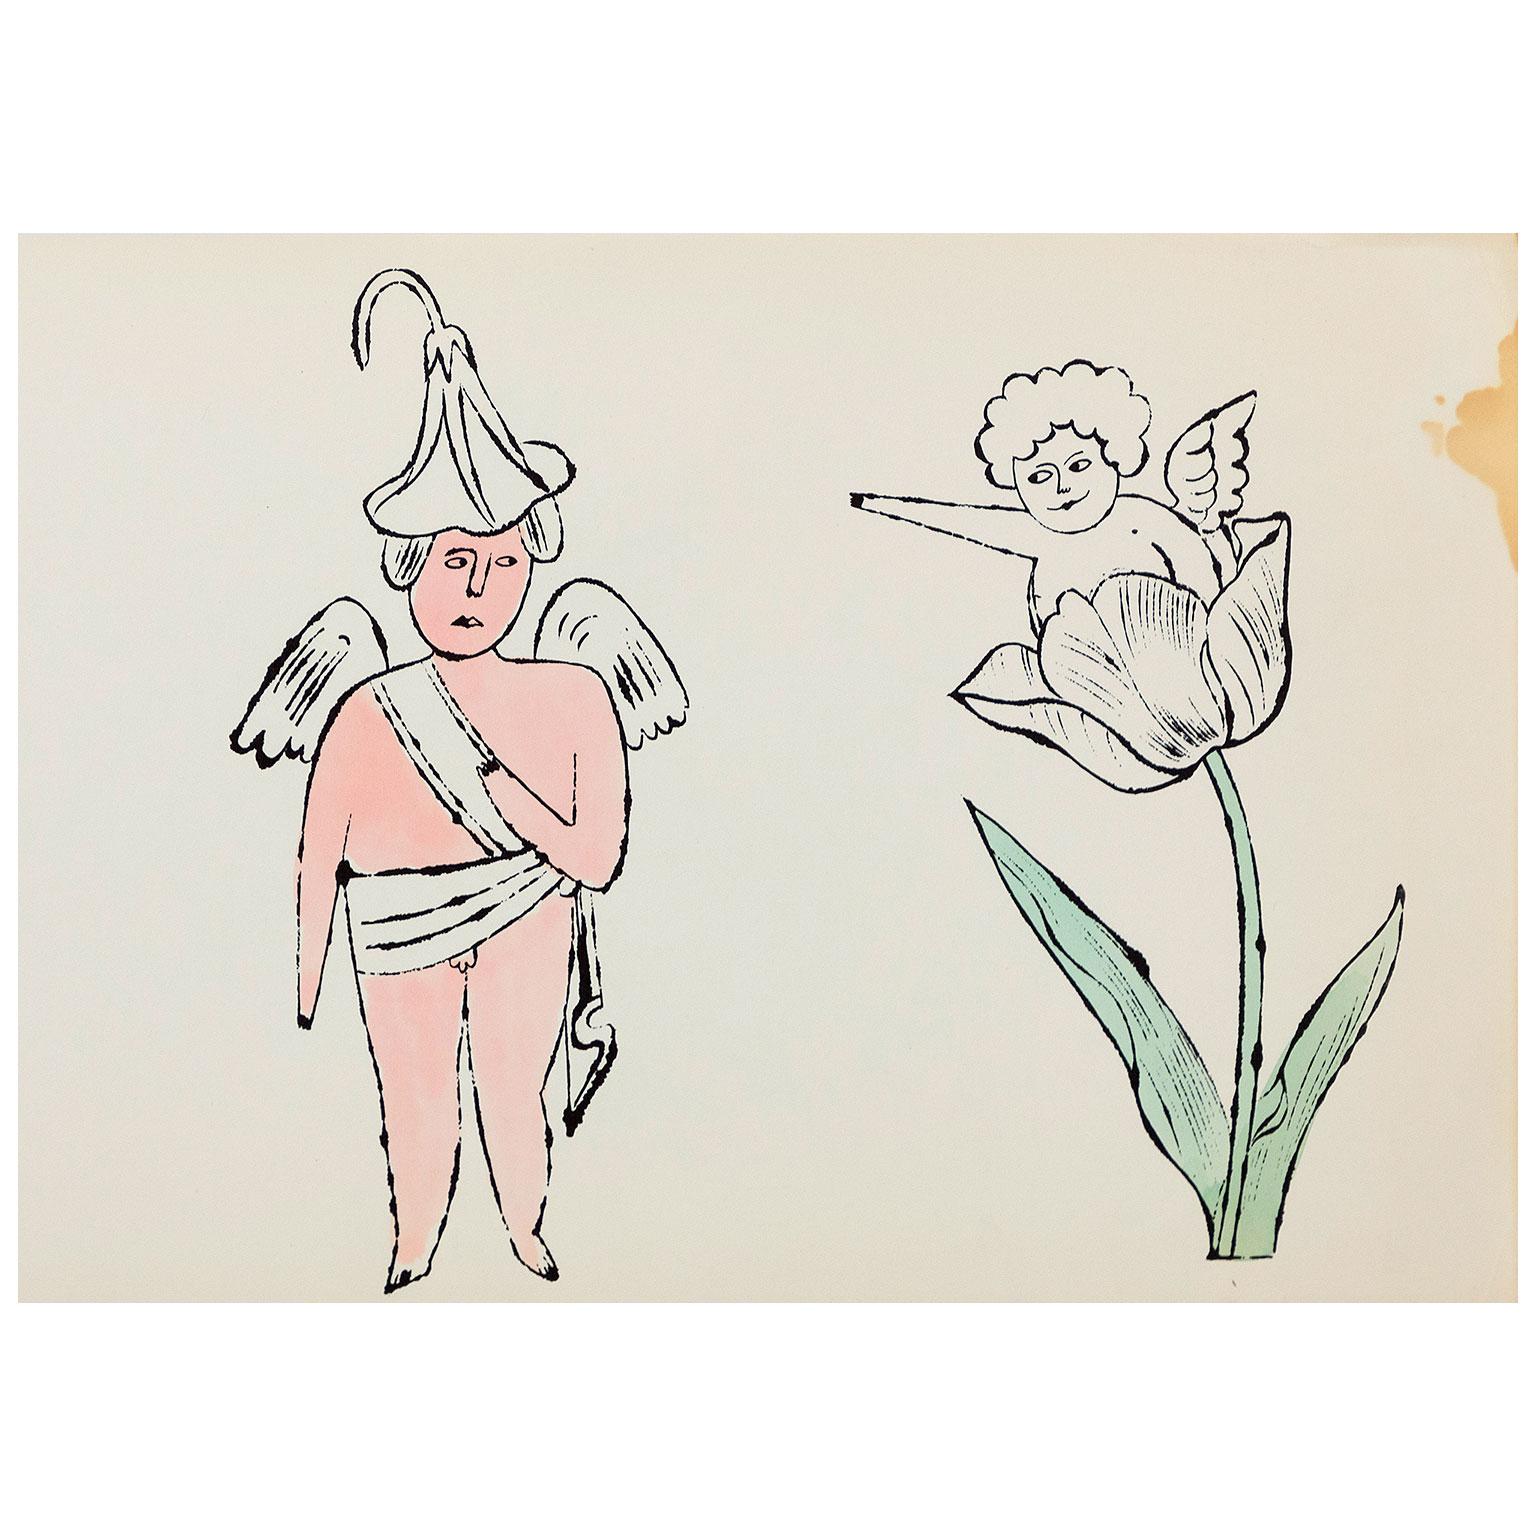 Andy Warhol est sans doute l'artiste américain le plus important du 20e siècle. Dans les années 1950, il était un illustrateur très demandé et célèbre, travaillant pour les publications les plus prestigieuses de New York (comme Harper's Bazaar) et